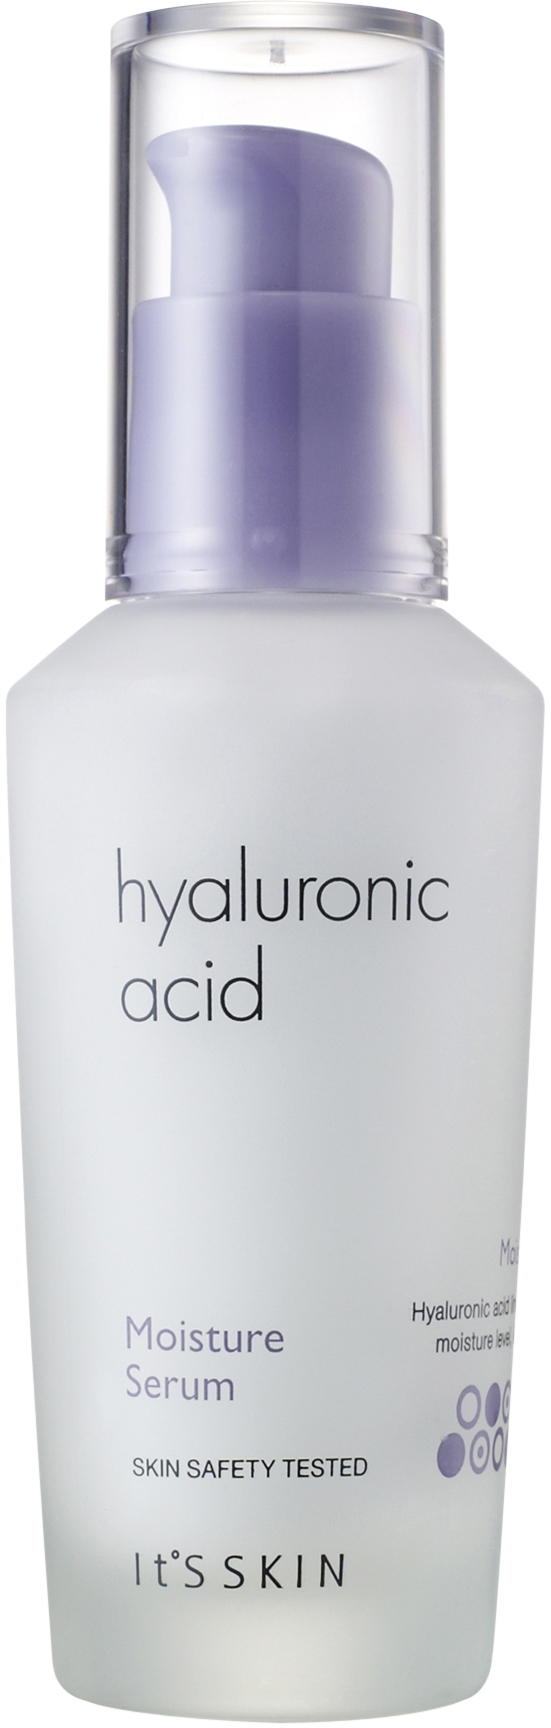 Сыворотка увлажняющая с гиалуроновой кислотой Hyaluronic Acid Moisture Serum, 40мл It's Skin